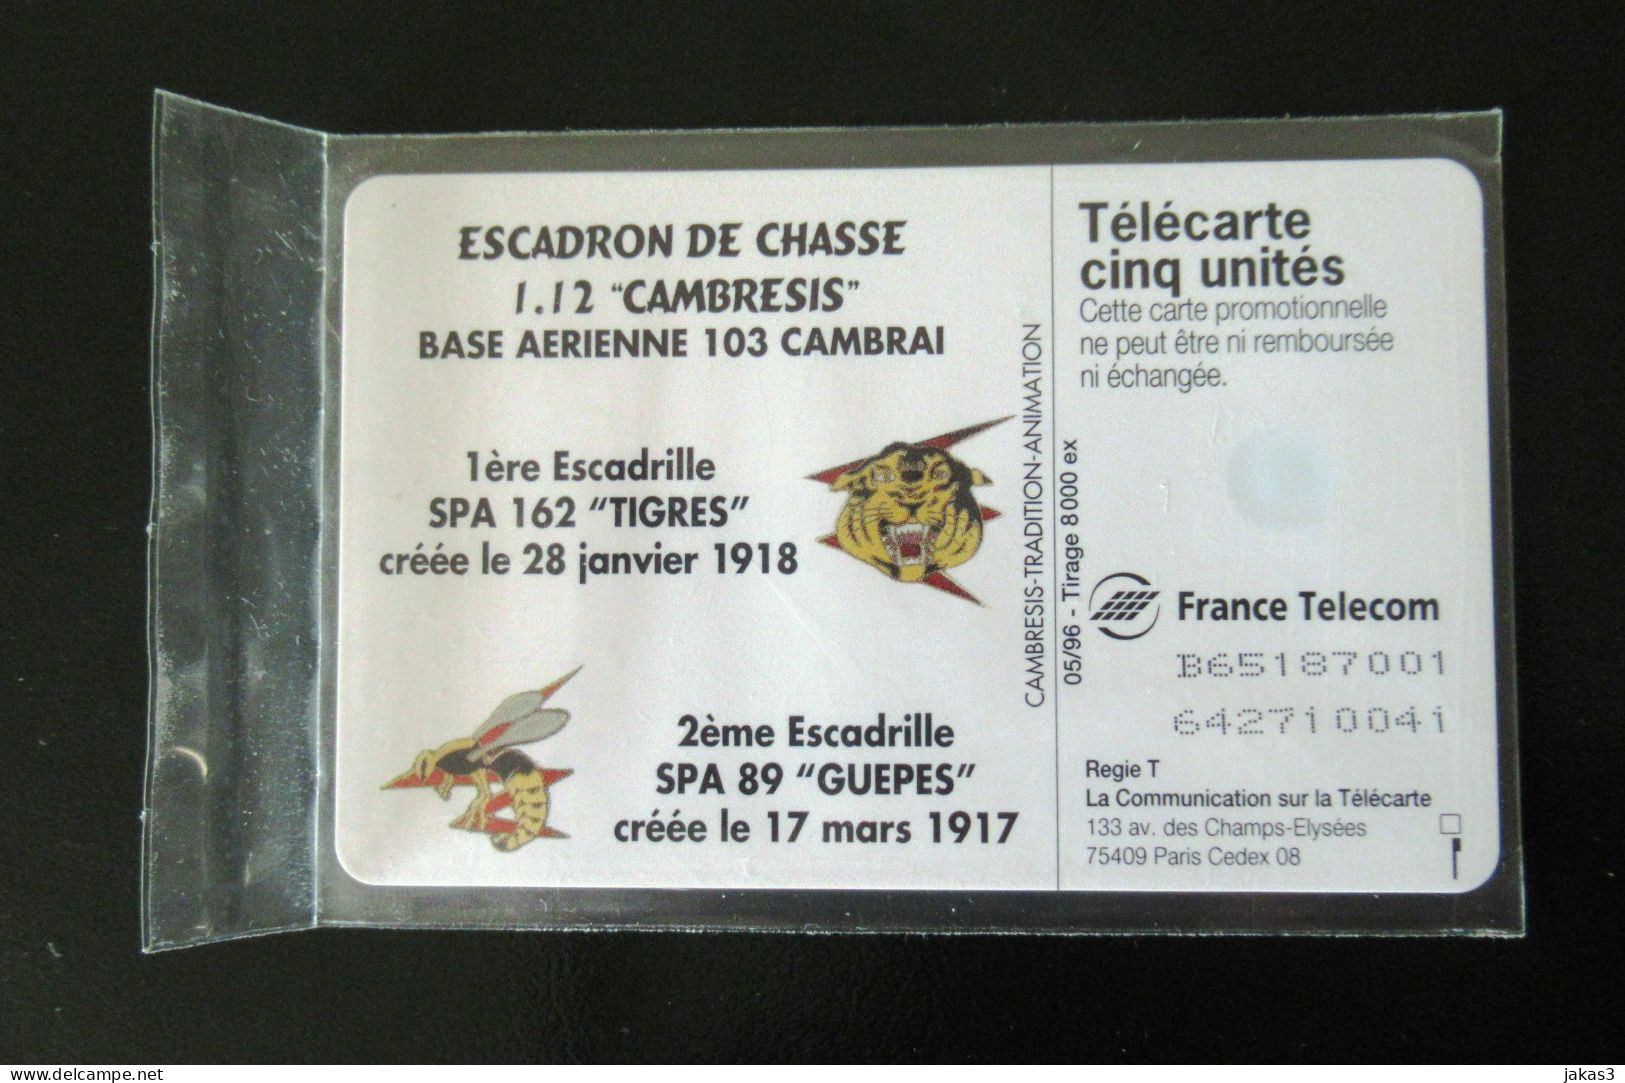 RARE TELECARTE 5 UNITES GN 235 ESCADRON CHASSE CAMBRESIS PARFAIT ETAT - 5 Units